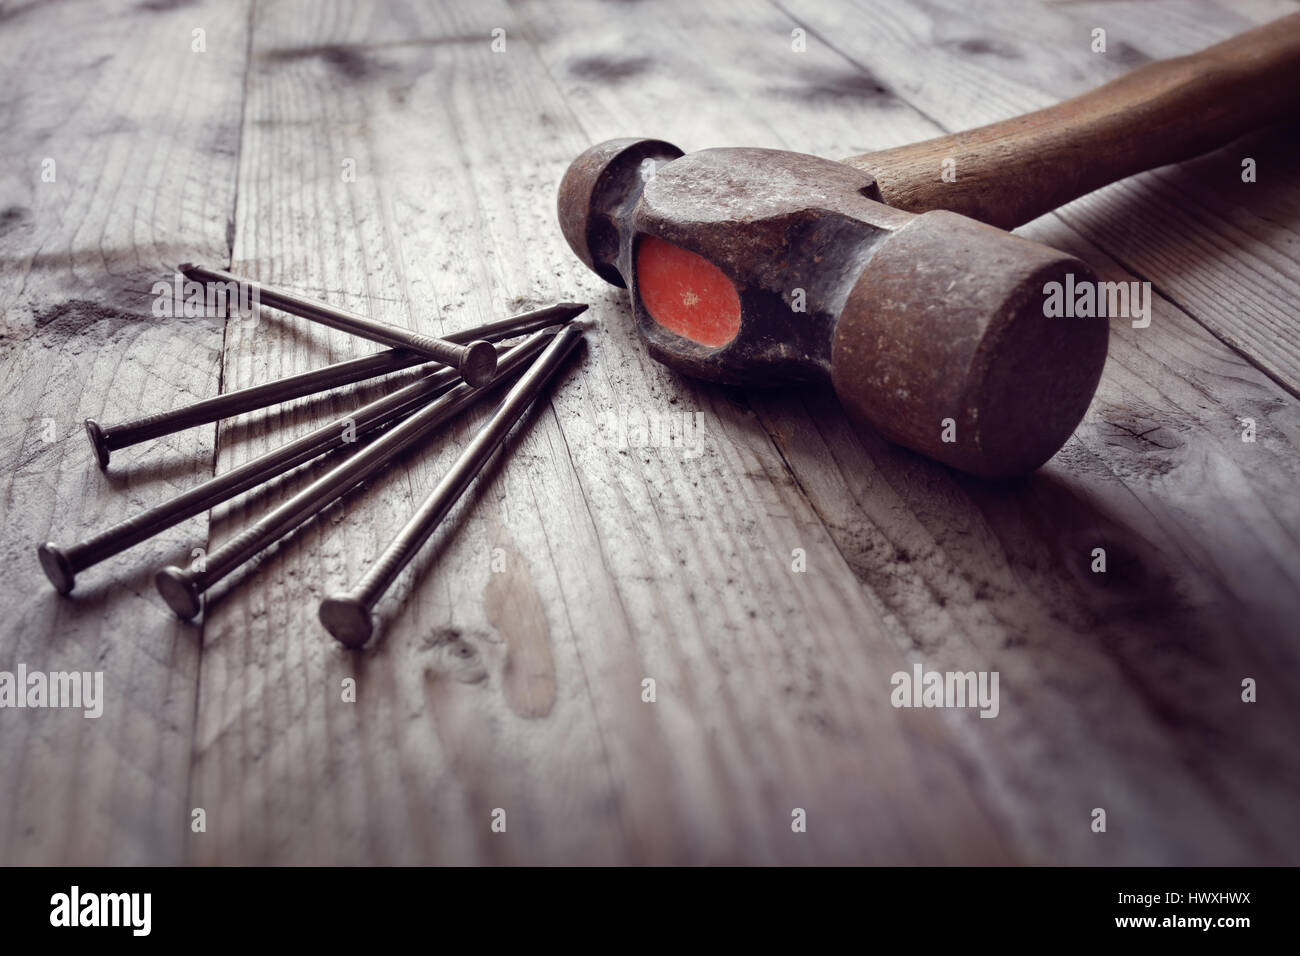 Hammer und Nägel auf Dielenböden Konzept für Bau, diy, Werkzeuge und home improvement Stockfoto